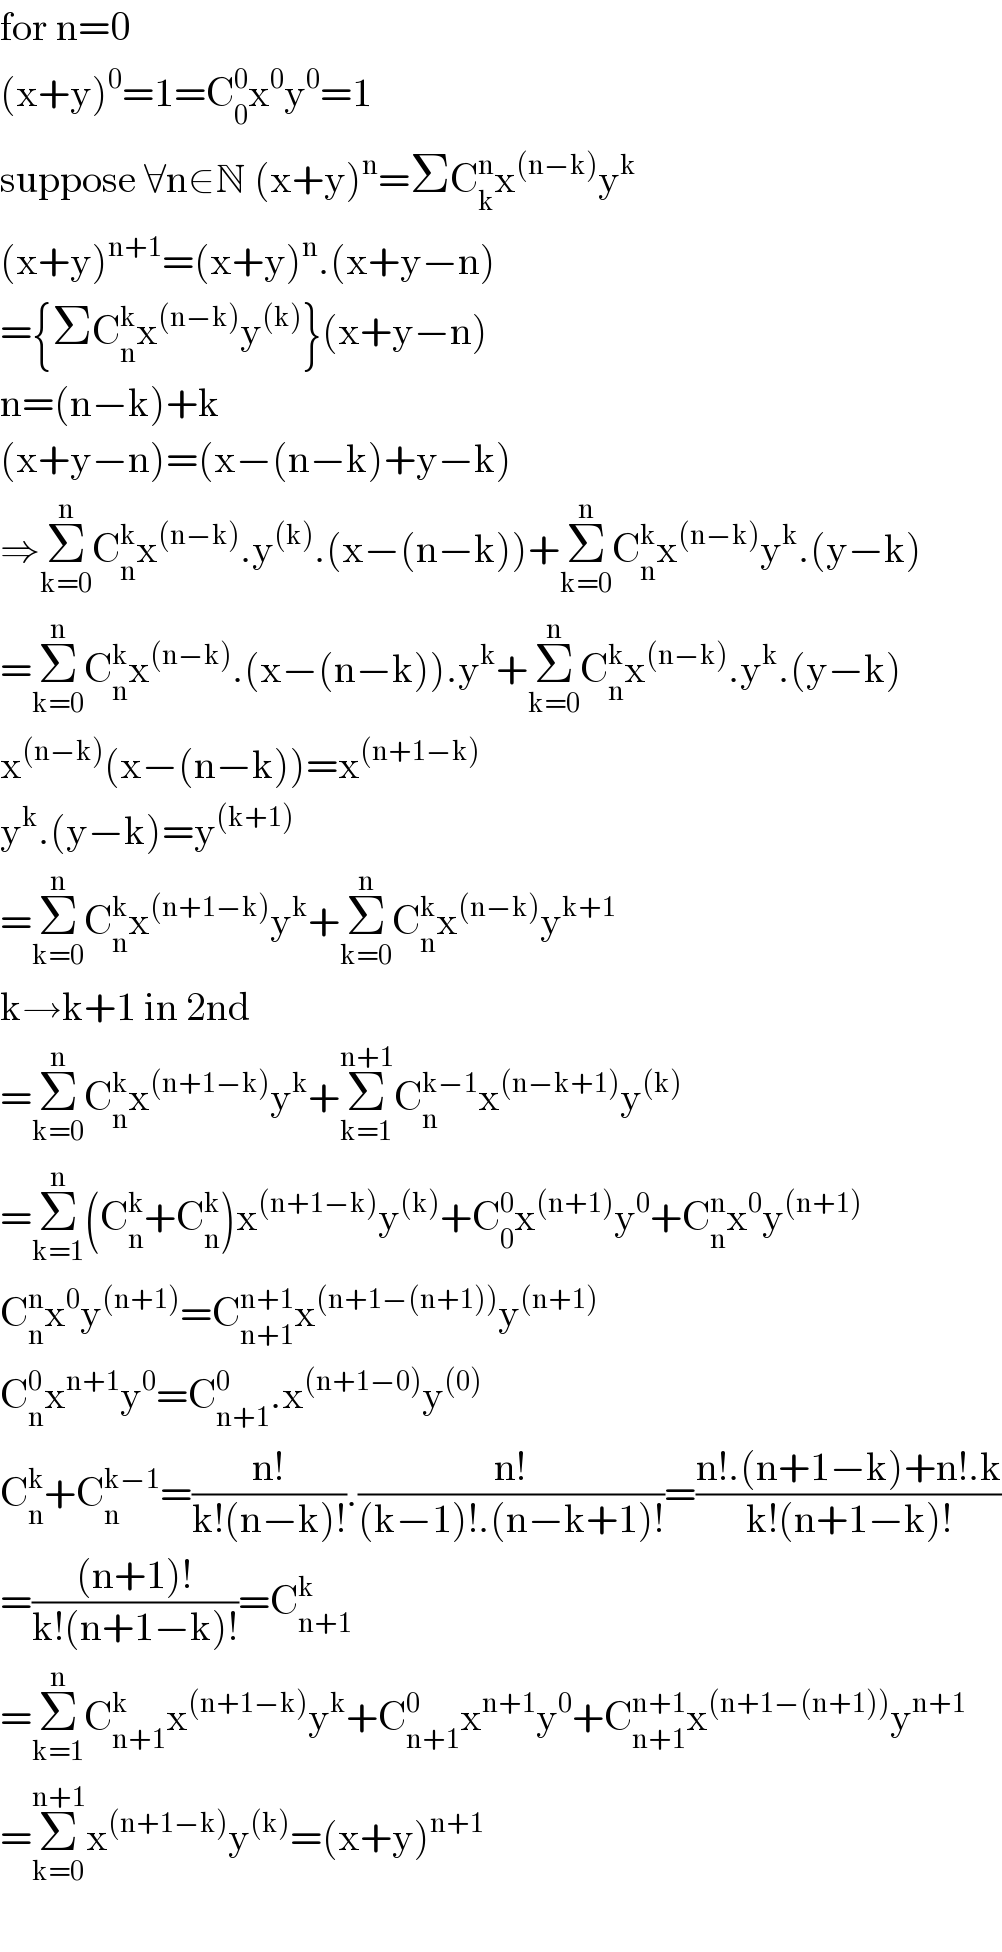 for n=0  (x+y)^0 =1=C_0 ^0 x^0 y^0 =1  suppose ∀n∈N (x+y)^n =ΣC_k ^n x^((n−k)) y^k   (x+y)^(n+1) =(x+y)^n .(x+y−n)  ={ΣC_n ^k x^((n−k)) y^((k)) }(x+y−n)  n=(n−k)+k  (x+y−n)=(x−(n−k)+y−k)  ⇒Σ_(k=0) ^n C_n ^k x^((n−k)) .y^((k)) .(x−(n−k))+Σ_(k=0) ^n C_n ^k x^((n−k)) y^k .(y−k)  =Σ_(k=0) ^n C_n ^k x^((n−k)) .(x−(n−k)).y^k +Σ_(k=0) ^n C_n ^k x^((n−k)) .y^k .(y−k)  x^((n−k)) (x−(n−k))=x^((n+1−k))   y^k .(y−k)=y^((k+1))   =Σ_(k=0) ^n C_n ^k x^((n+1−k)) y^k +Σ_(k=0) ^n C_n ^k x^((n−k)) y^(k+1)   k→k+1 in 2nd   =Σ_(k=0) ^n C_n ^k x^((n+1−k)) y^k +Σ_(k=1) ^(n+1) C_n ^(k−1) x^((n−k+1)) y^((k))   =Σ_(k=1) ^n (C_n ^k +C_n ^k )x^((n+1−k)) y^((k)) +C_0 ^0 x^((n+1)) y^0 +C_n ^n x^0 y^((n+1))   C_n ^n x^0 y^((n+1)) =C_(n+1) ^(n+1) x^((n+1−(n+1))) y^((n+1))   C_n ^0 x^(n+1) y^0 =C_(n+1) ^0 .x^((n+1−0)) y^((0))   C_n ^k +C_n ^(k−1) =((n!)/(k!(n−k)!)).((n!)/((k−1)!.(n−k+1)!))=((n!.(n+1−k)+n!.k)/(k!(n+1−k)!))  =(((n+1)!)/(k!(n+1−k)!))=C_(n+1) ^k   =Σ_(k=1) ^n C_(n+1) ^k x^((n+1−k)) y^k +C_(n+1) ^0 x^(n+1) y^0 +C_(n+1) ^(n+1) x^((n+1−(n+1))) y^(n+1)   =Σ_(k=0) ^(n+1) x^((n+1−k)) y^((k)) =(x+y)^(n+1)      